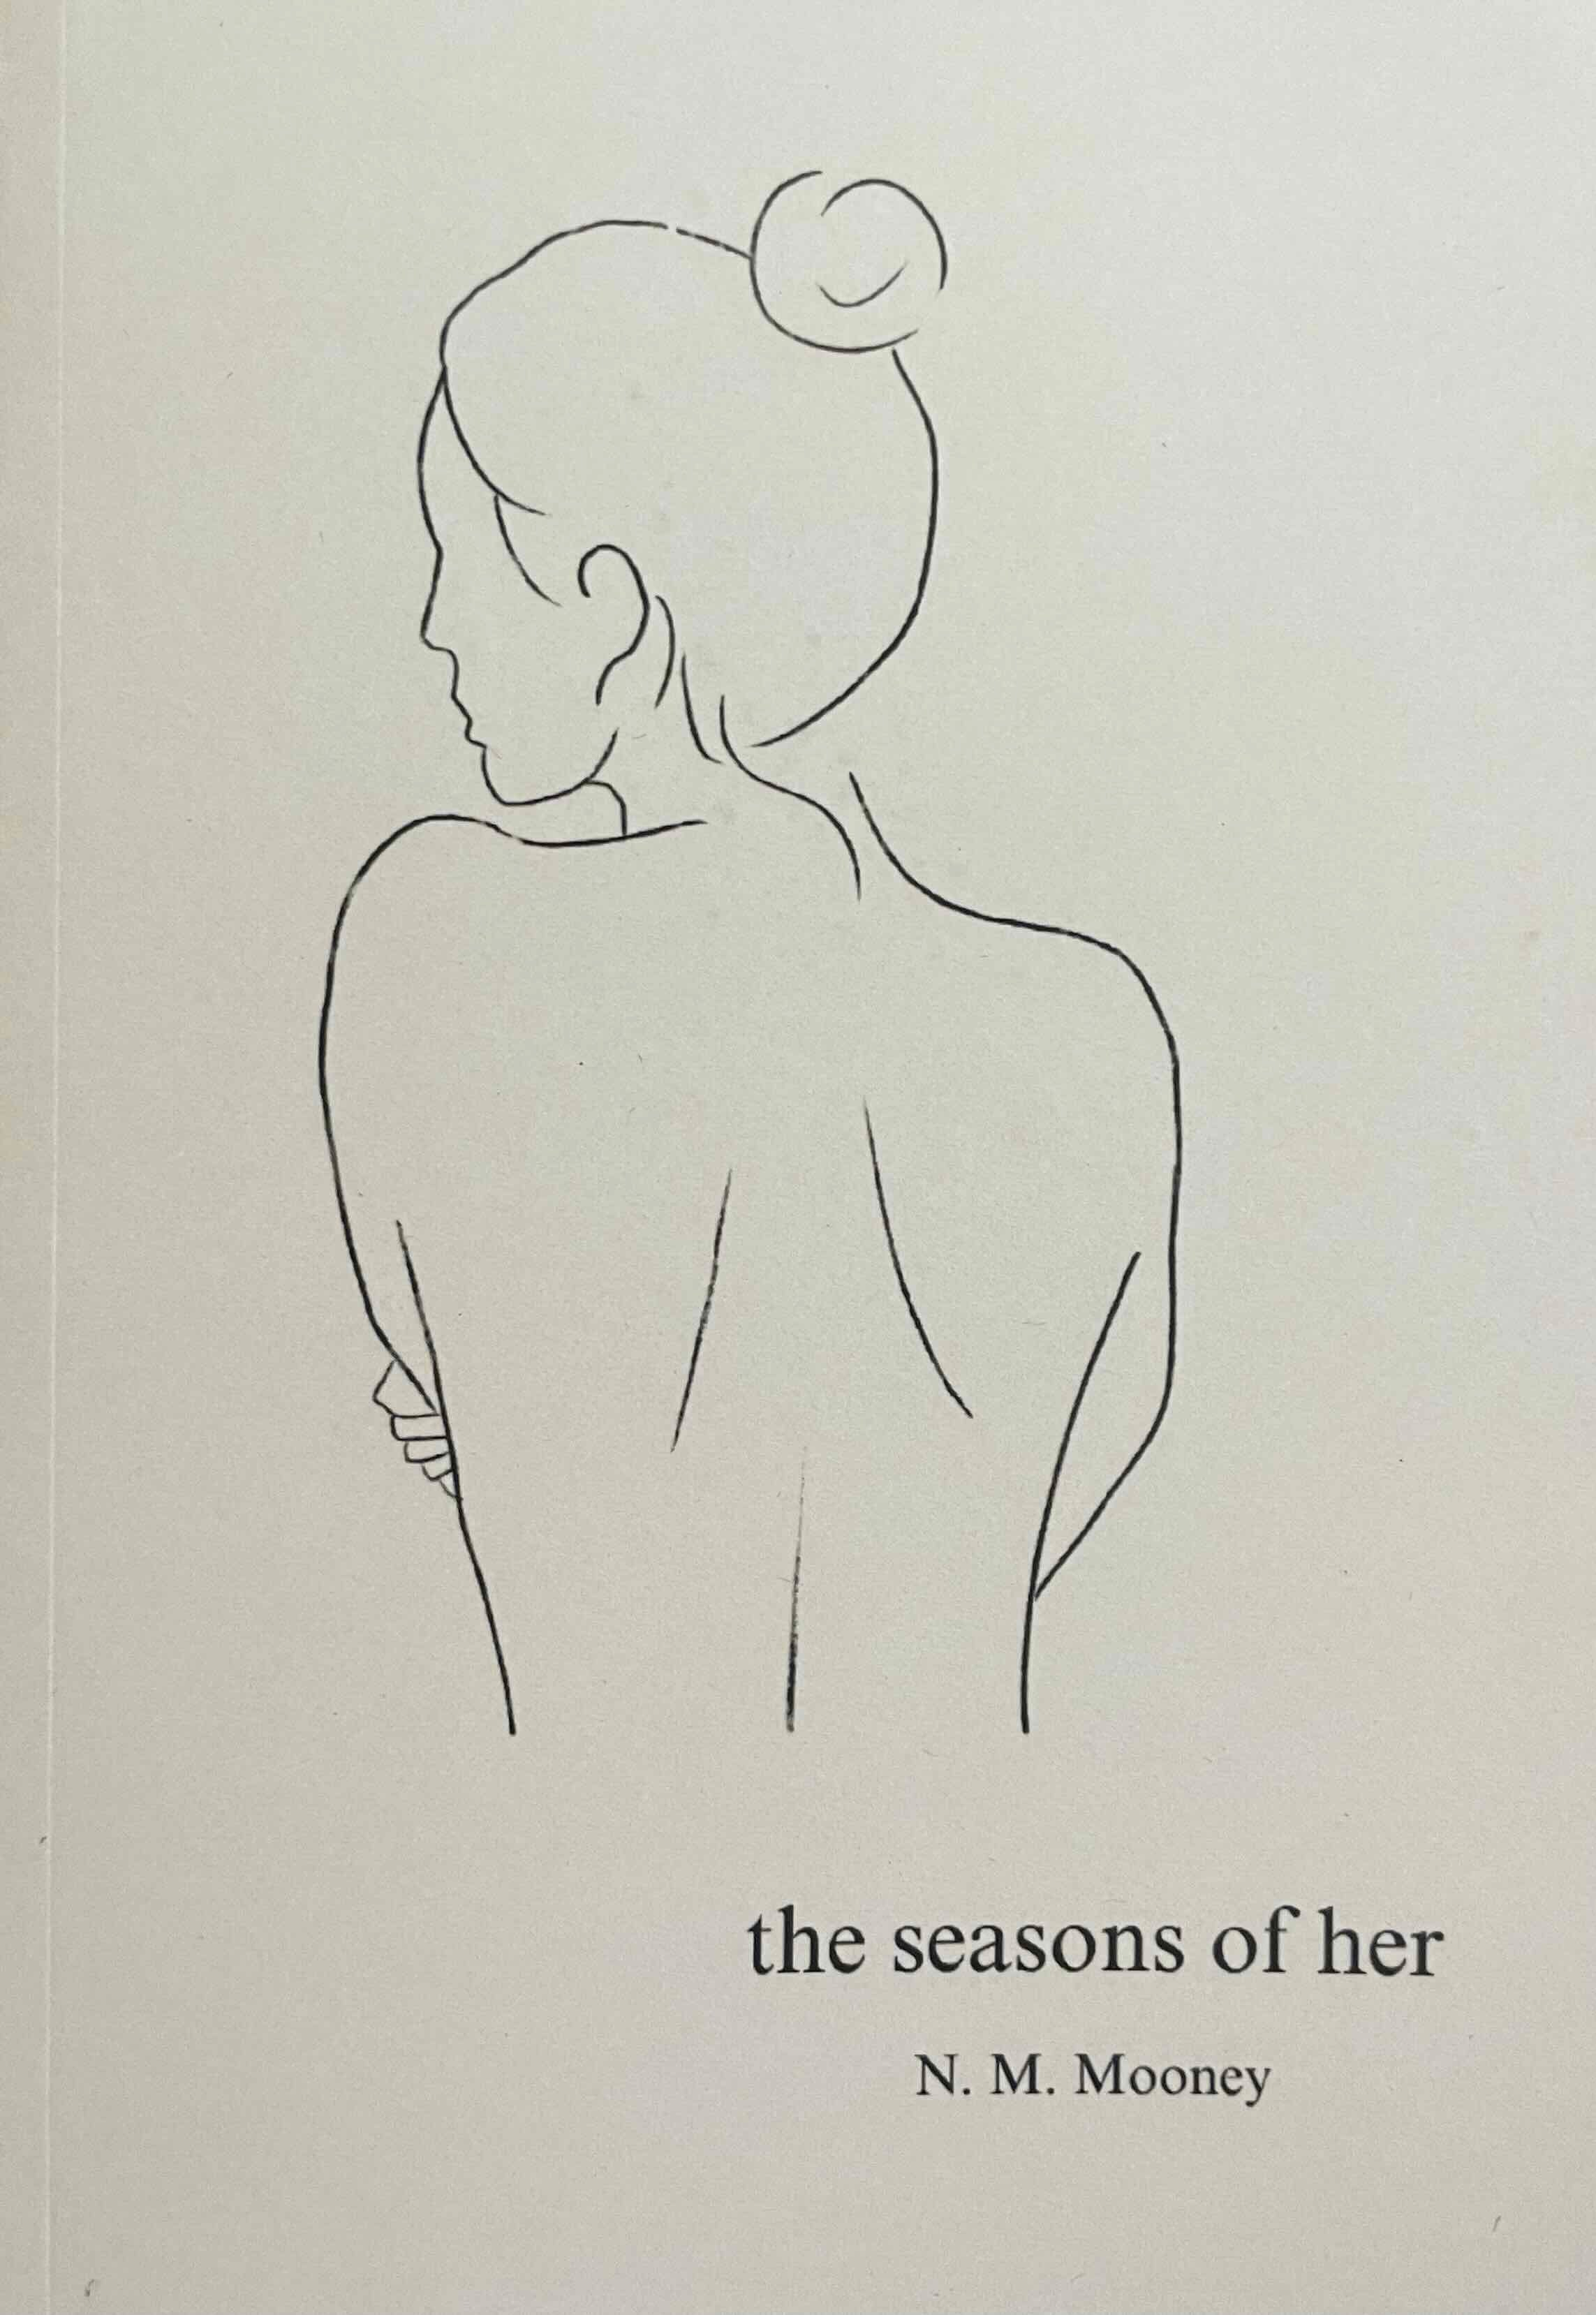 The Seasons of Her - by N. M. Mooney